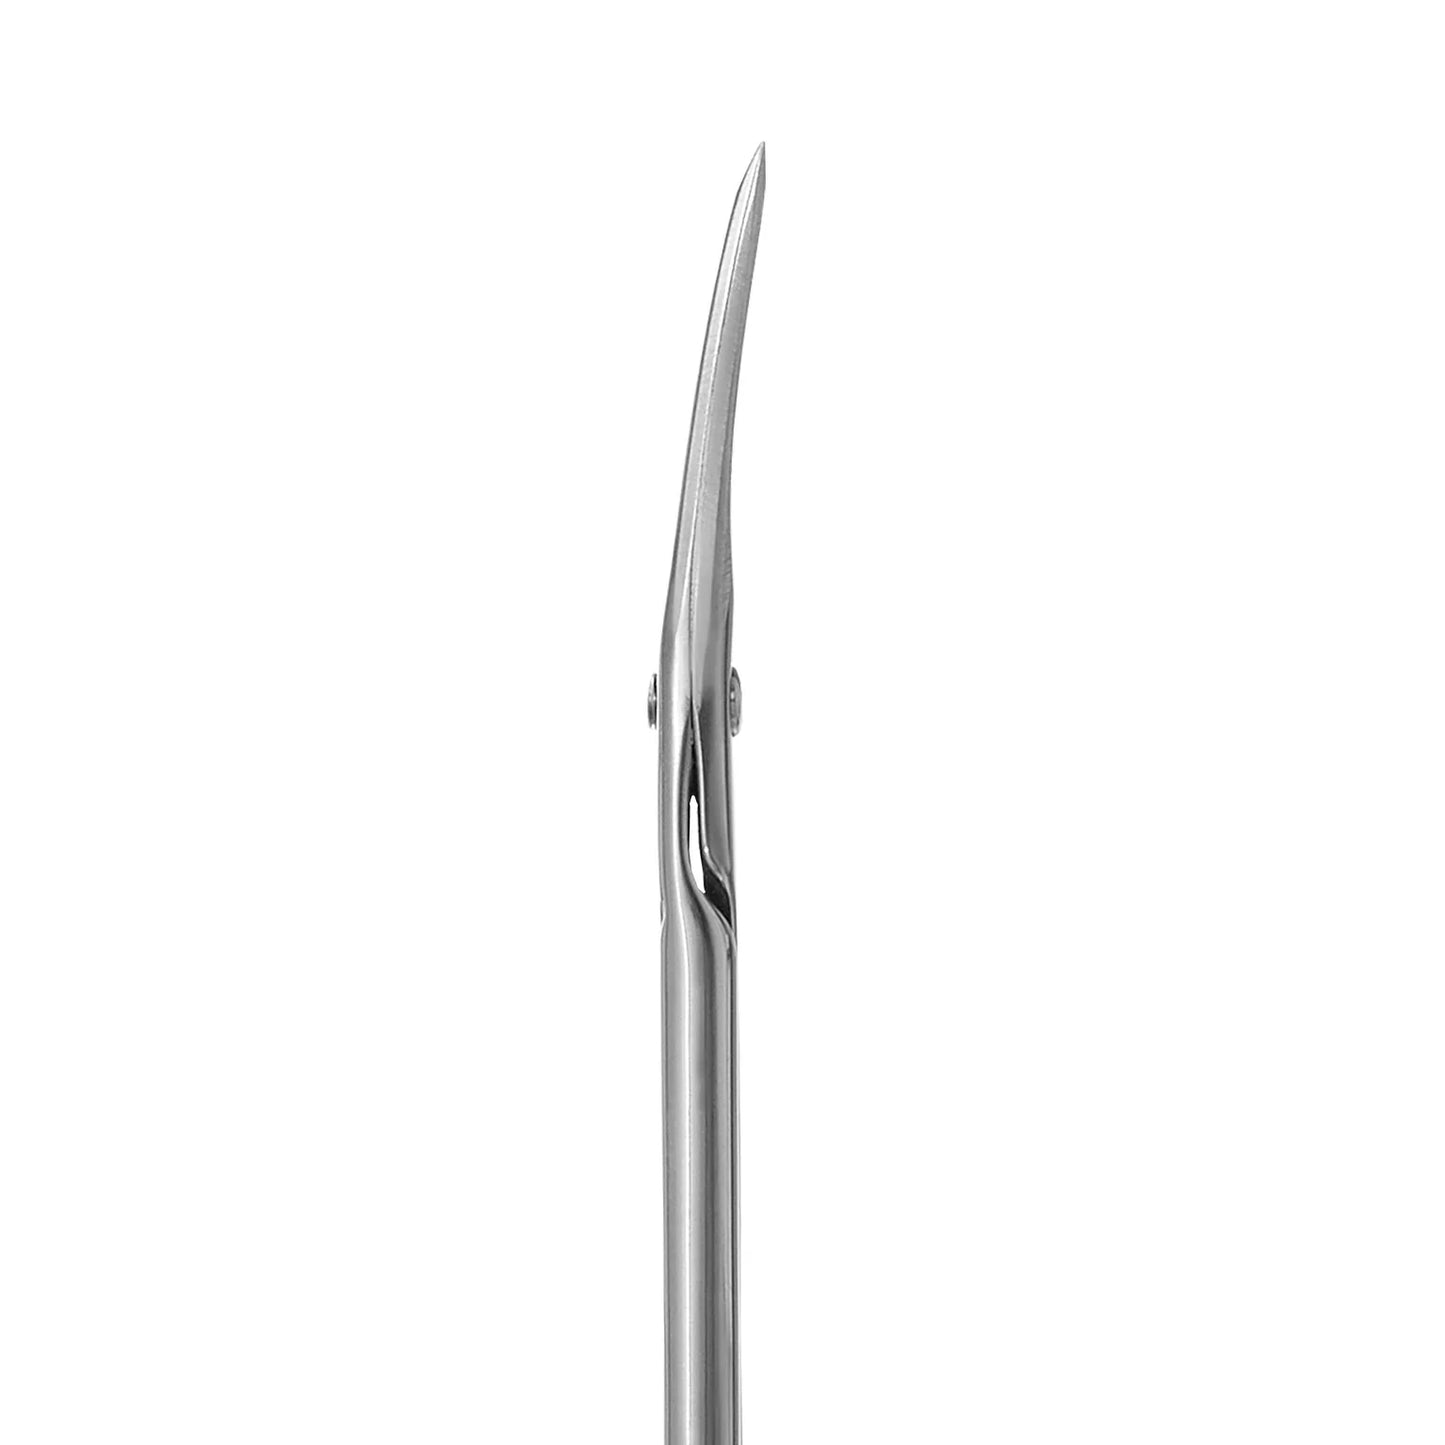 Cuticle scissors CLASSIC 21 TYPE 1 -SC-21/1